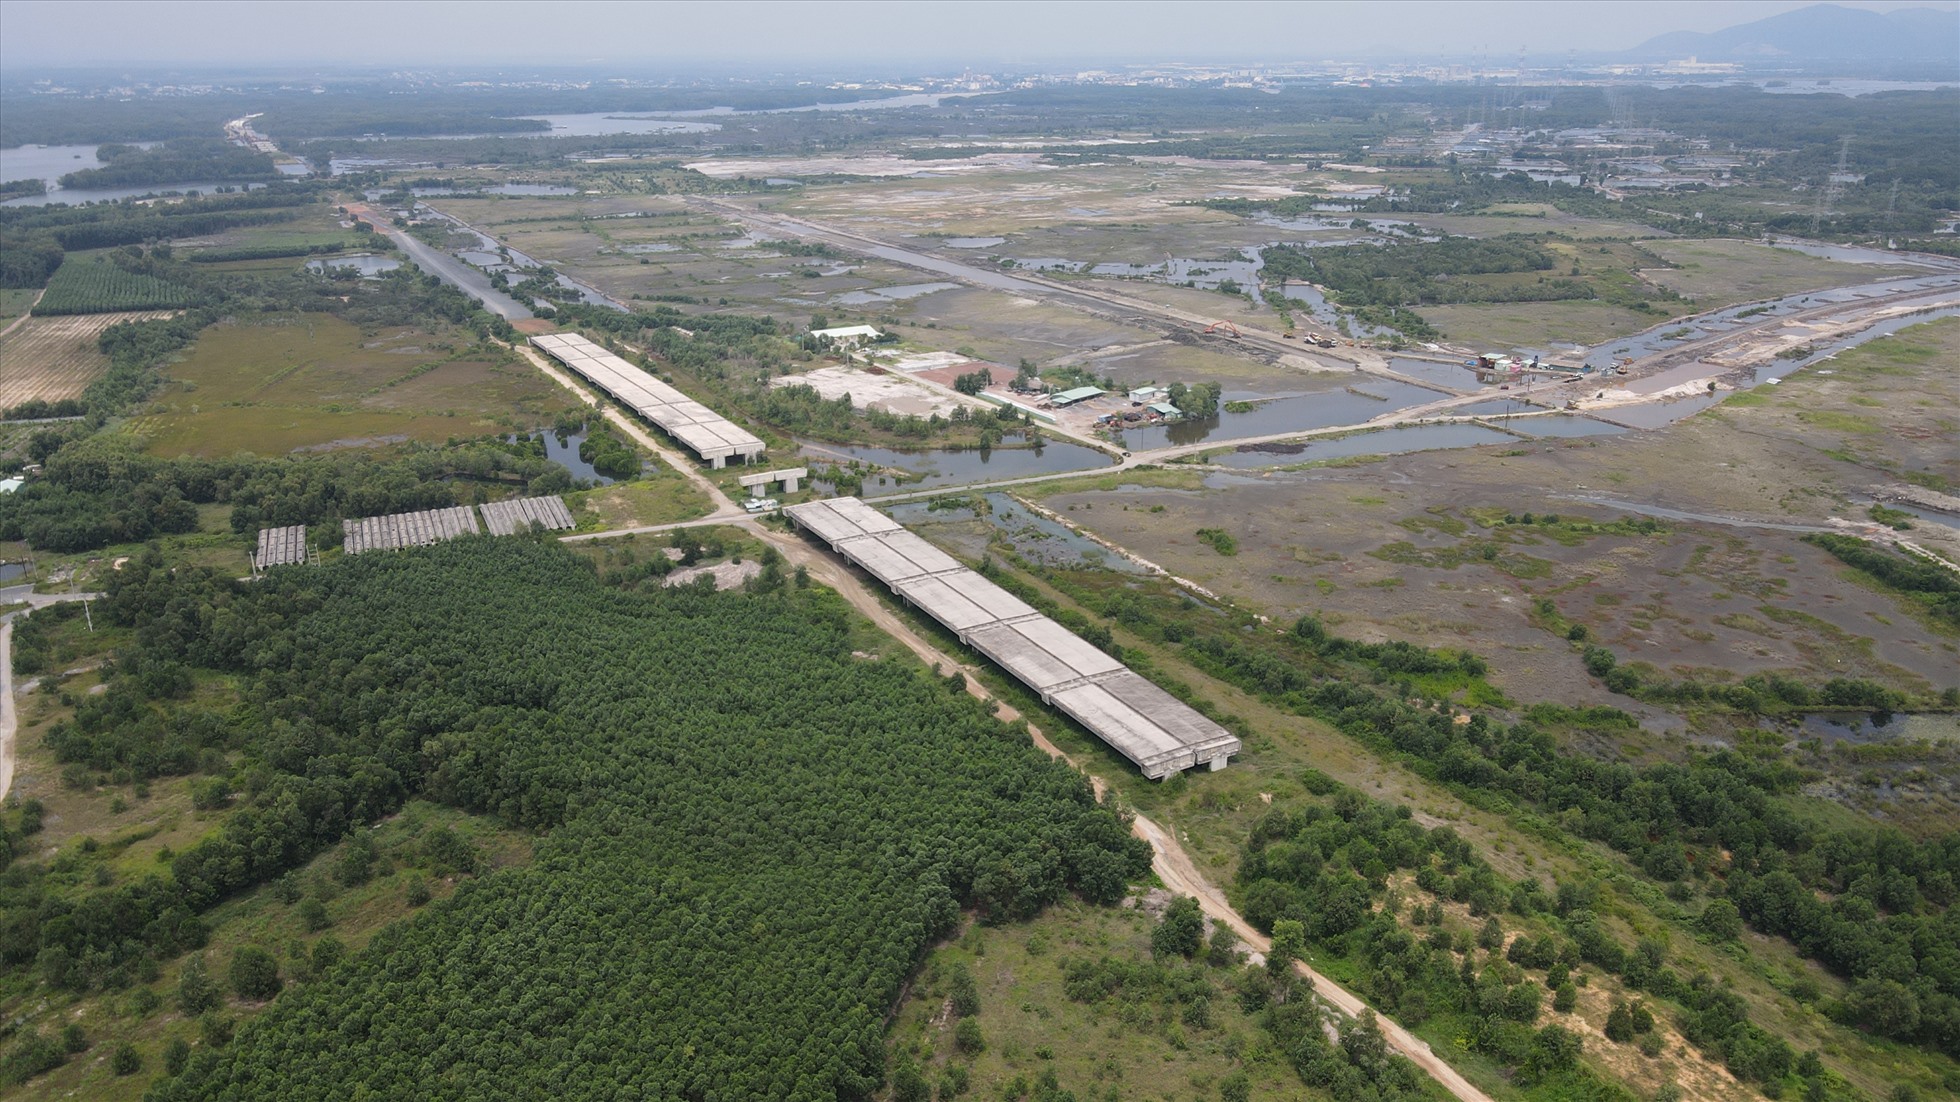 Cao tốc đi qua khoảng 3,5 km rừng ngập mặn đi qua huyện Long Thành và huyện Nhơn Trạch. 10ha bị ảnh hưởng, trồng rừng thay thế hoàn trả khoảng 15 ha.